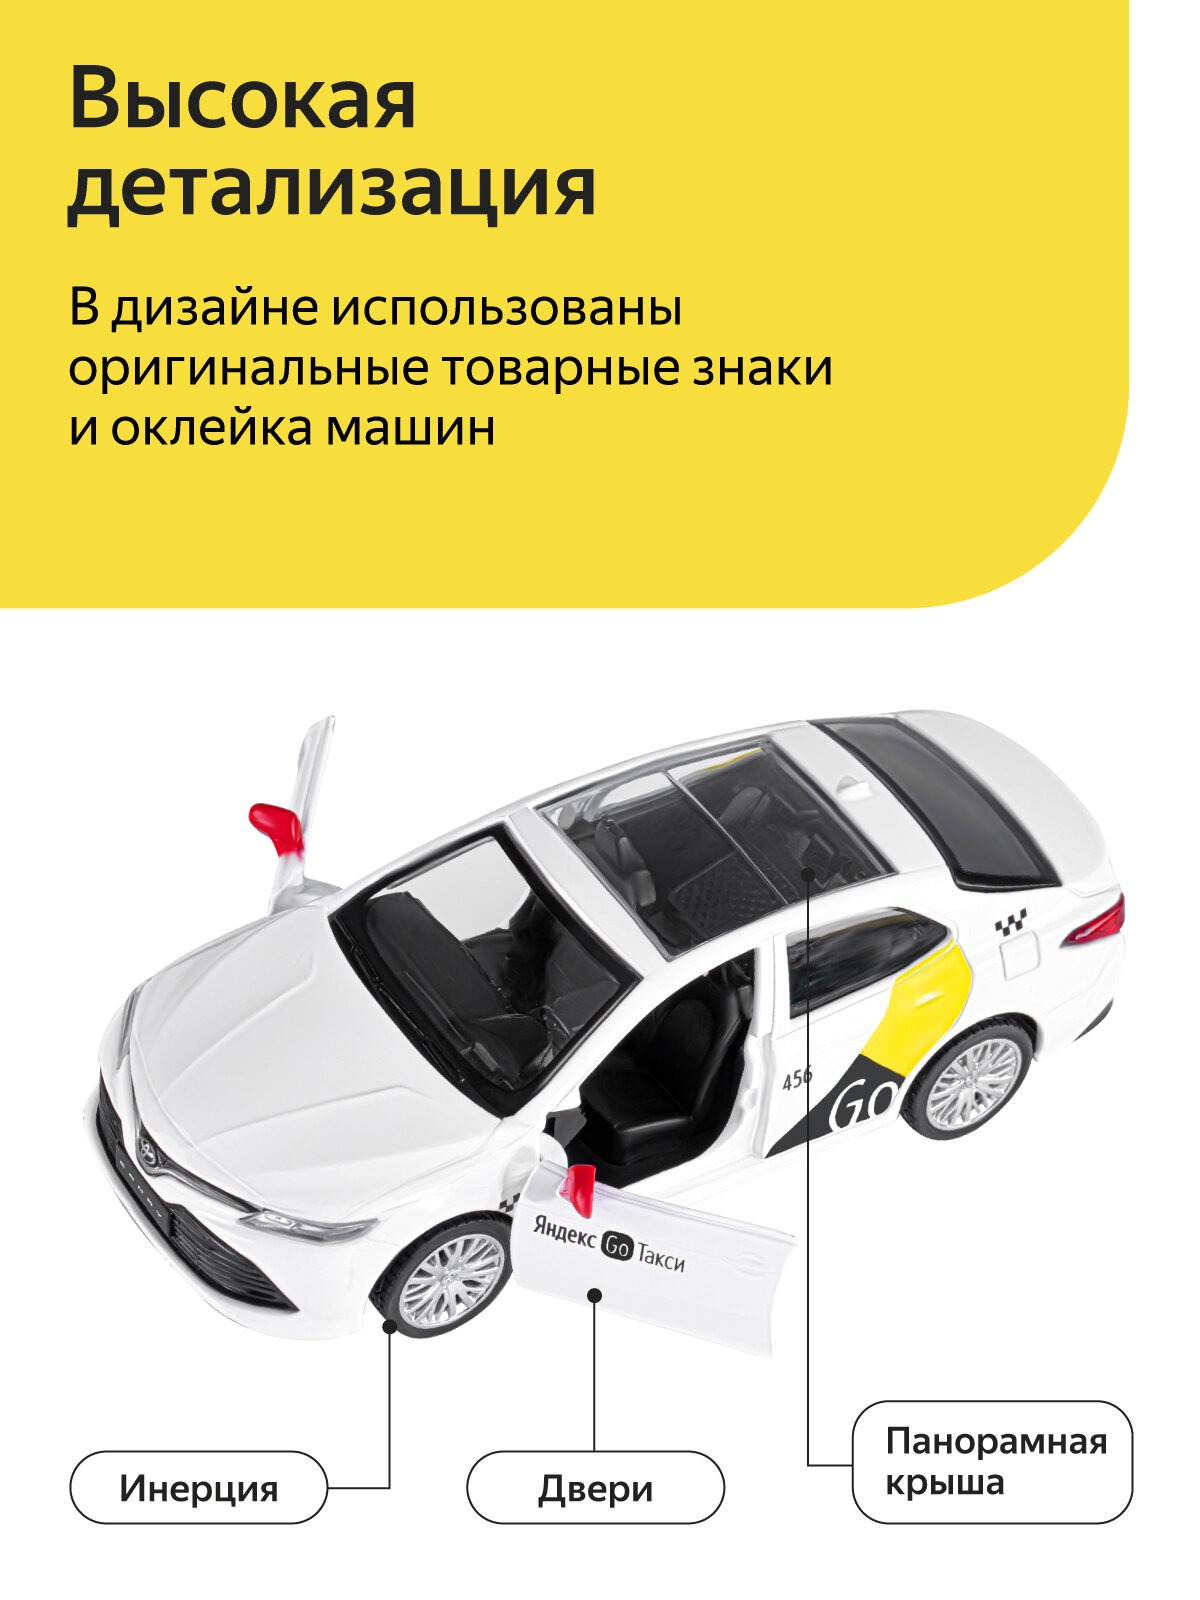 Машинка металлическая Яндекс GO 1:43 Toyota Camry озвучено Алисой цвет белый JB1251484 - фото 2